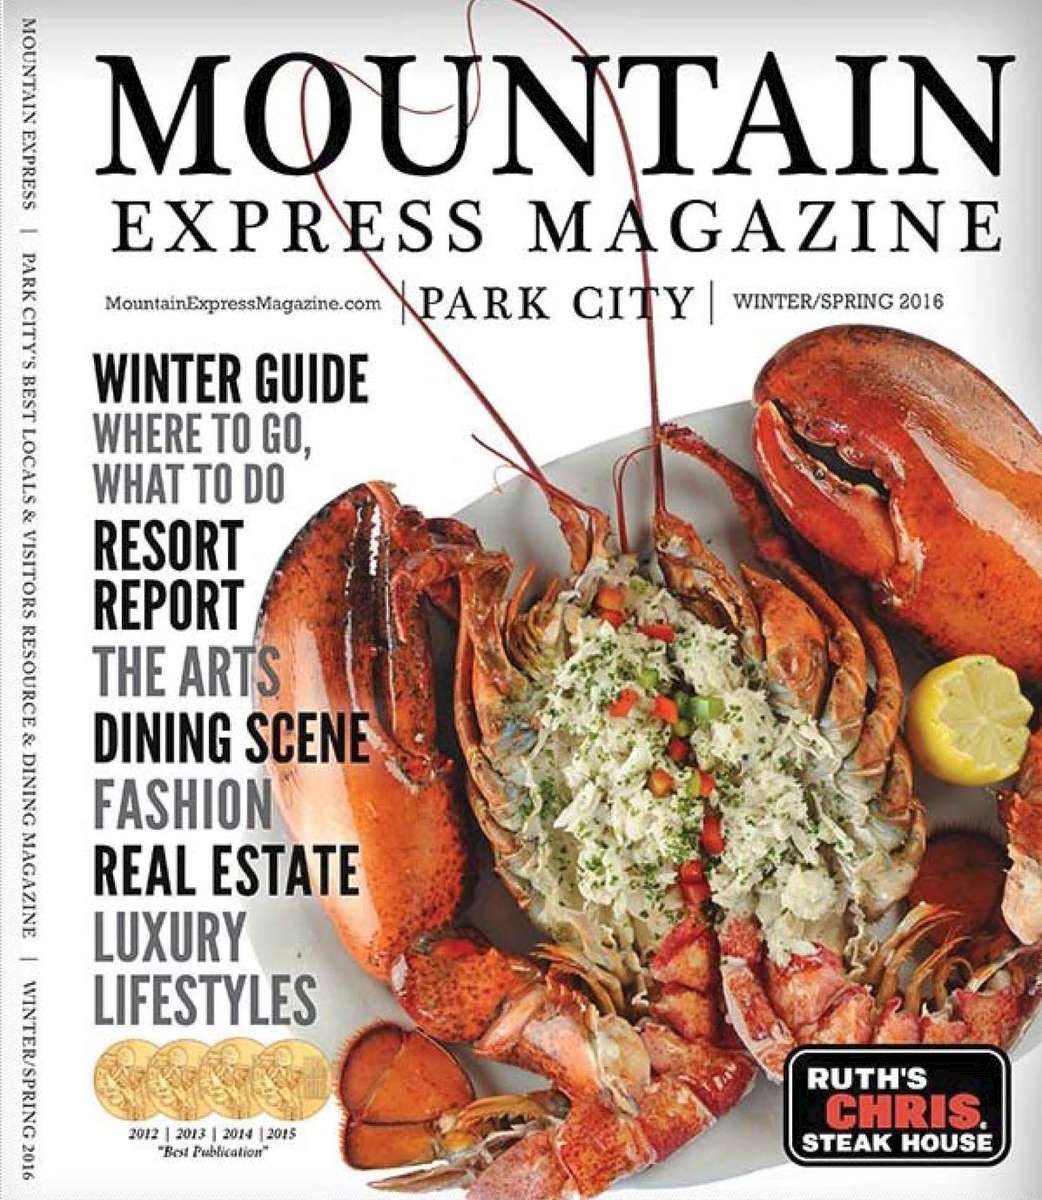 Mountain Express Magazine